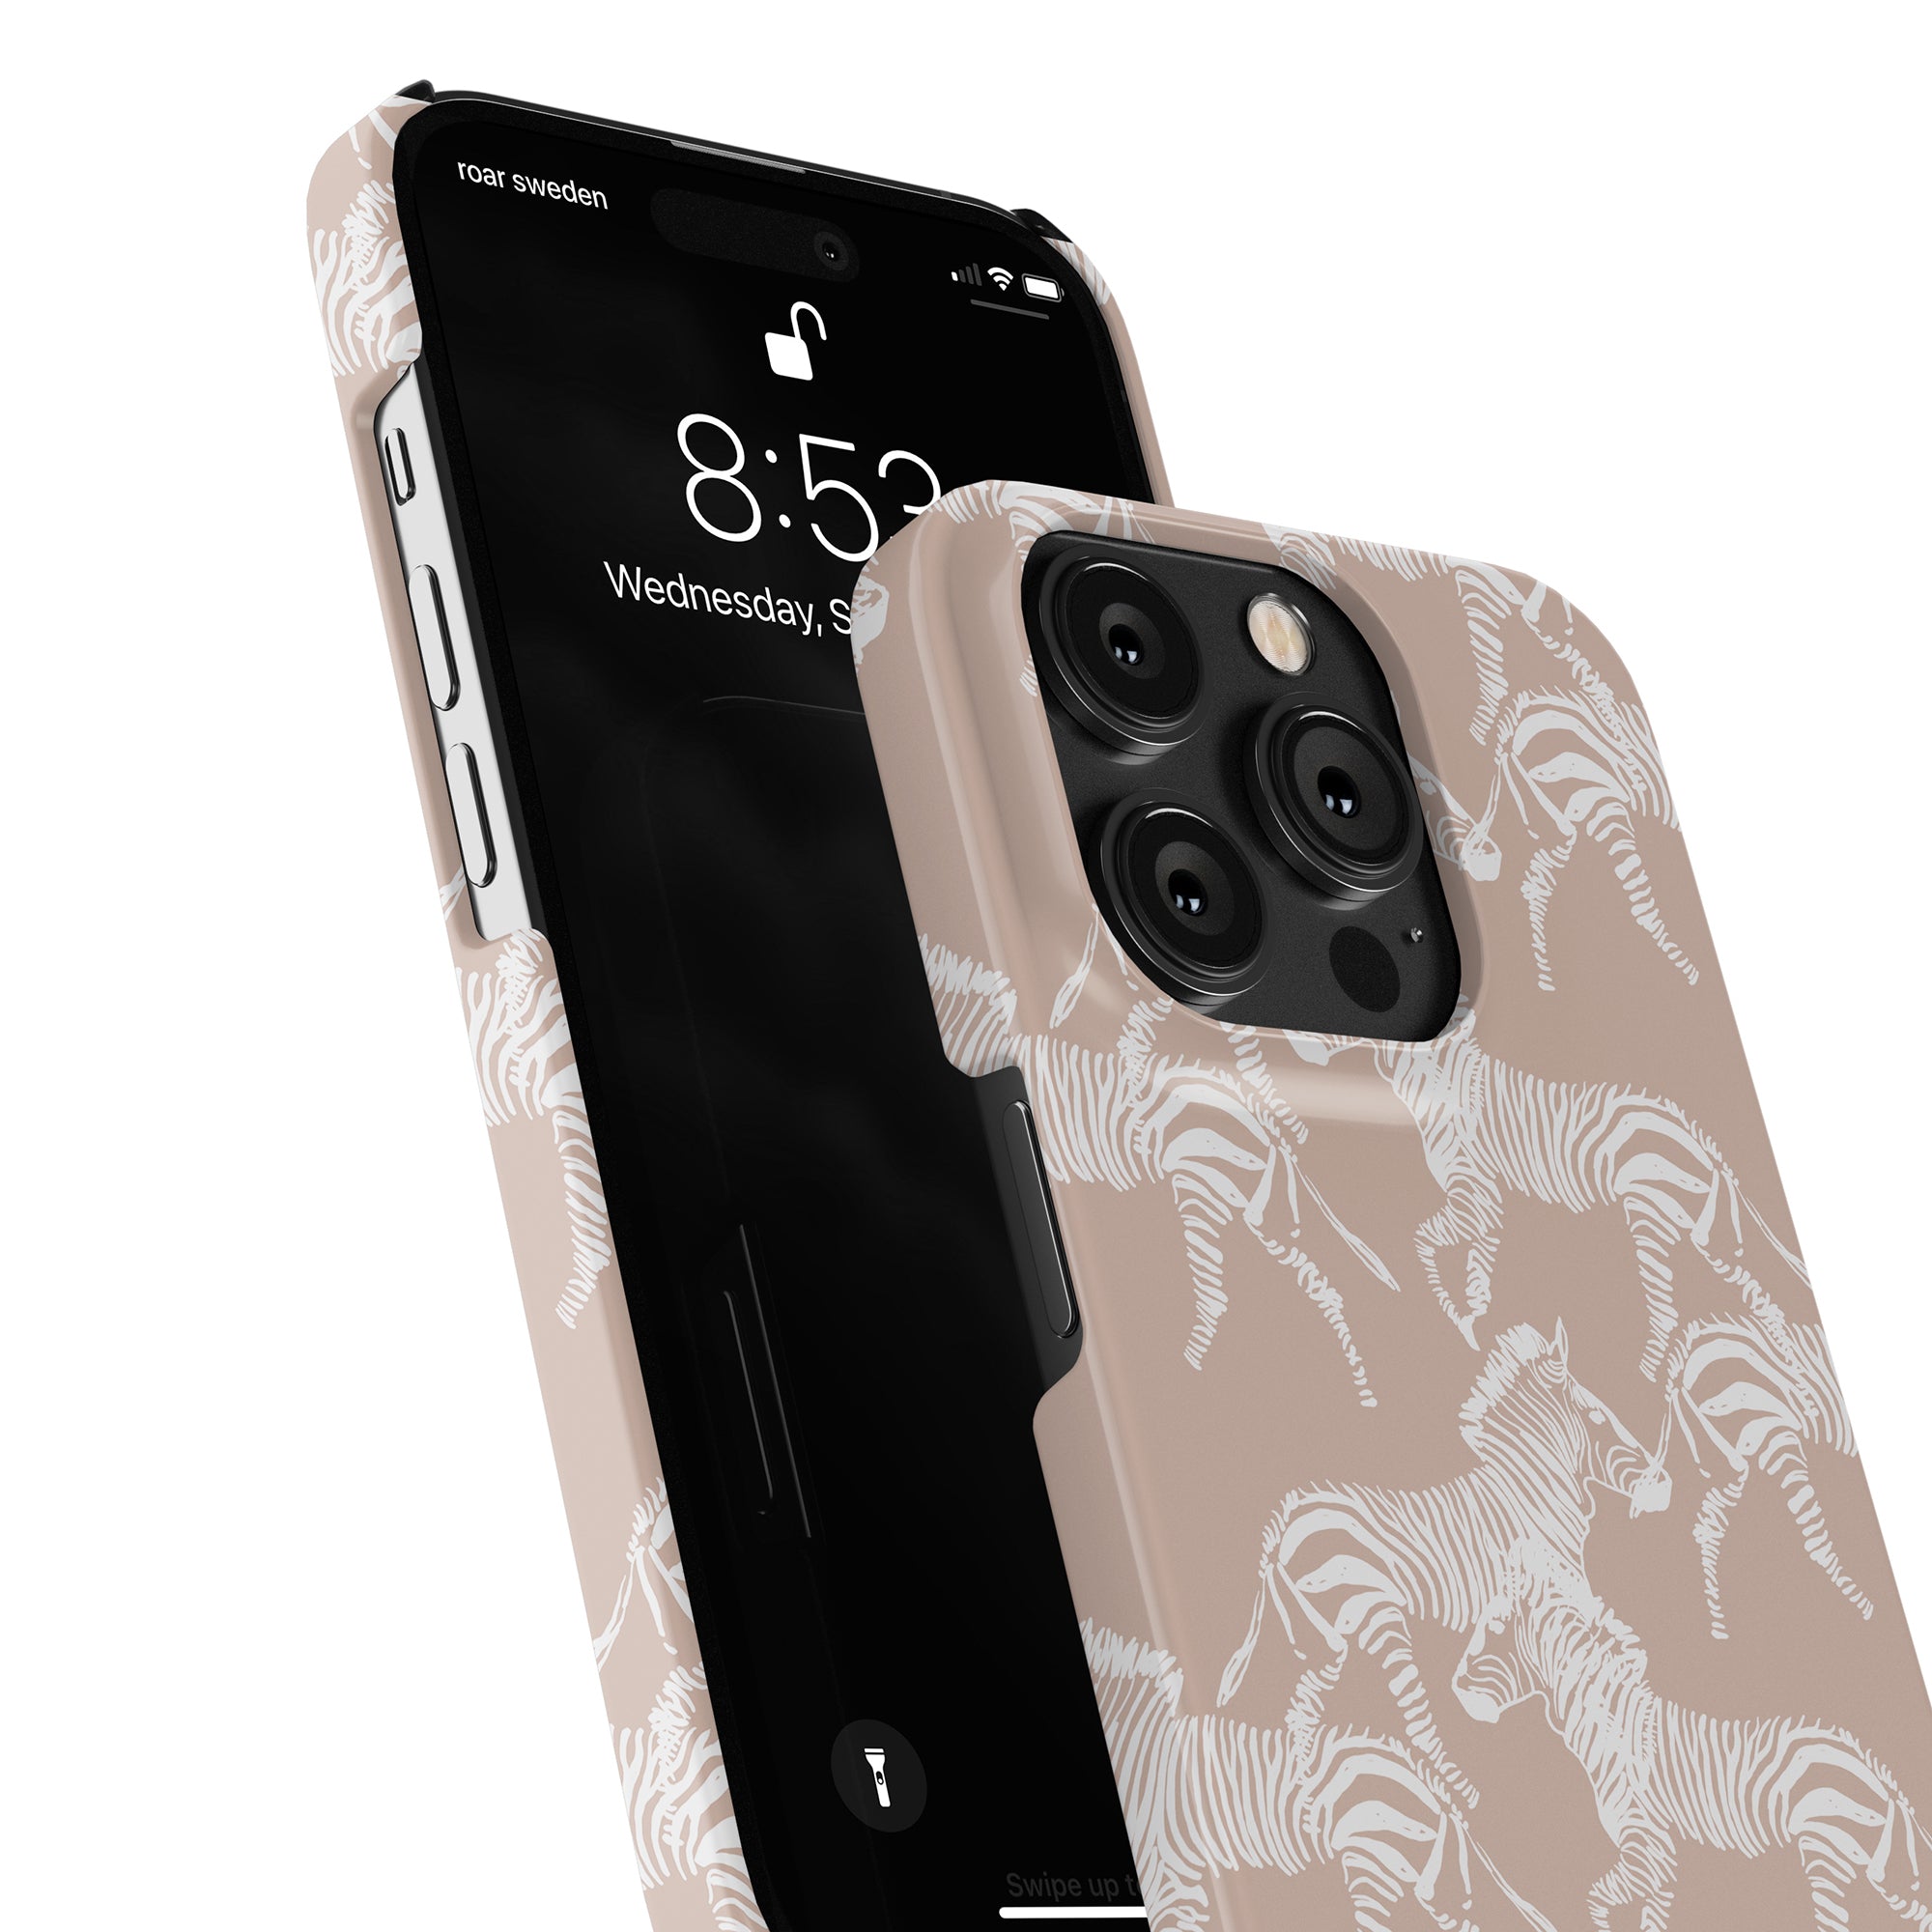 Roar Sweden presenterar Namibia - Slim Case, ett elegant telefonfodral med ett fängslande zebratryck inspirerat av det majestätiska djurlivet som finns på safari. Speciellt designad för iPhone 11 Pro.